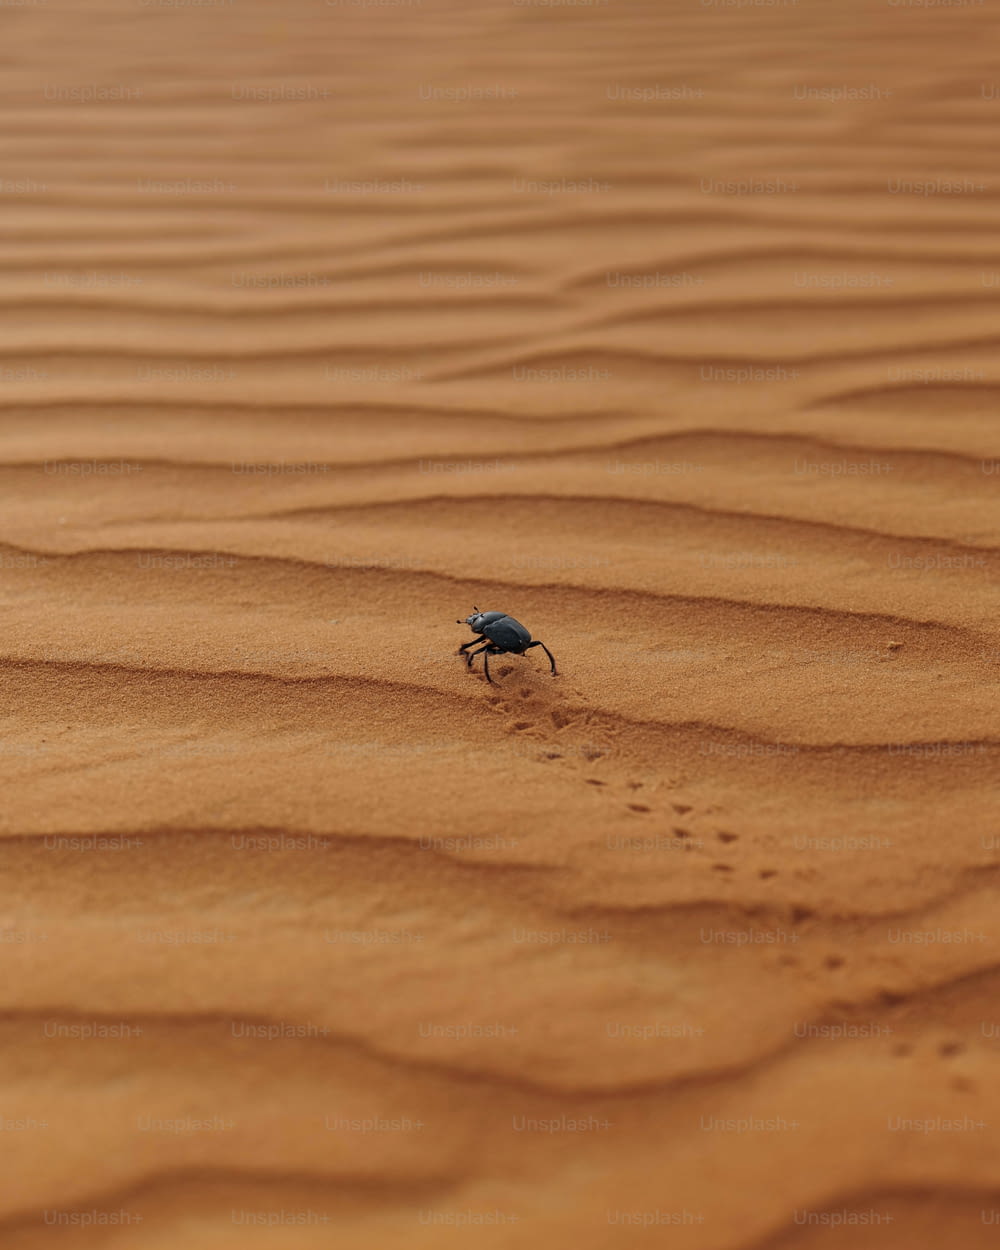 Un insecte rampant sur une zone sablonneuse dans le désert